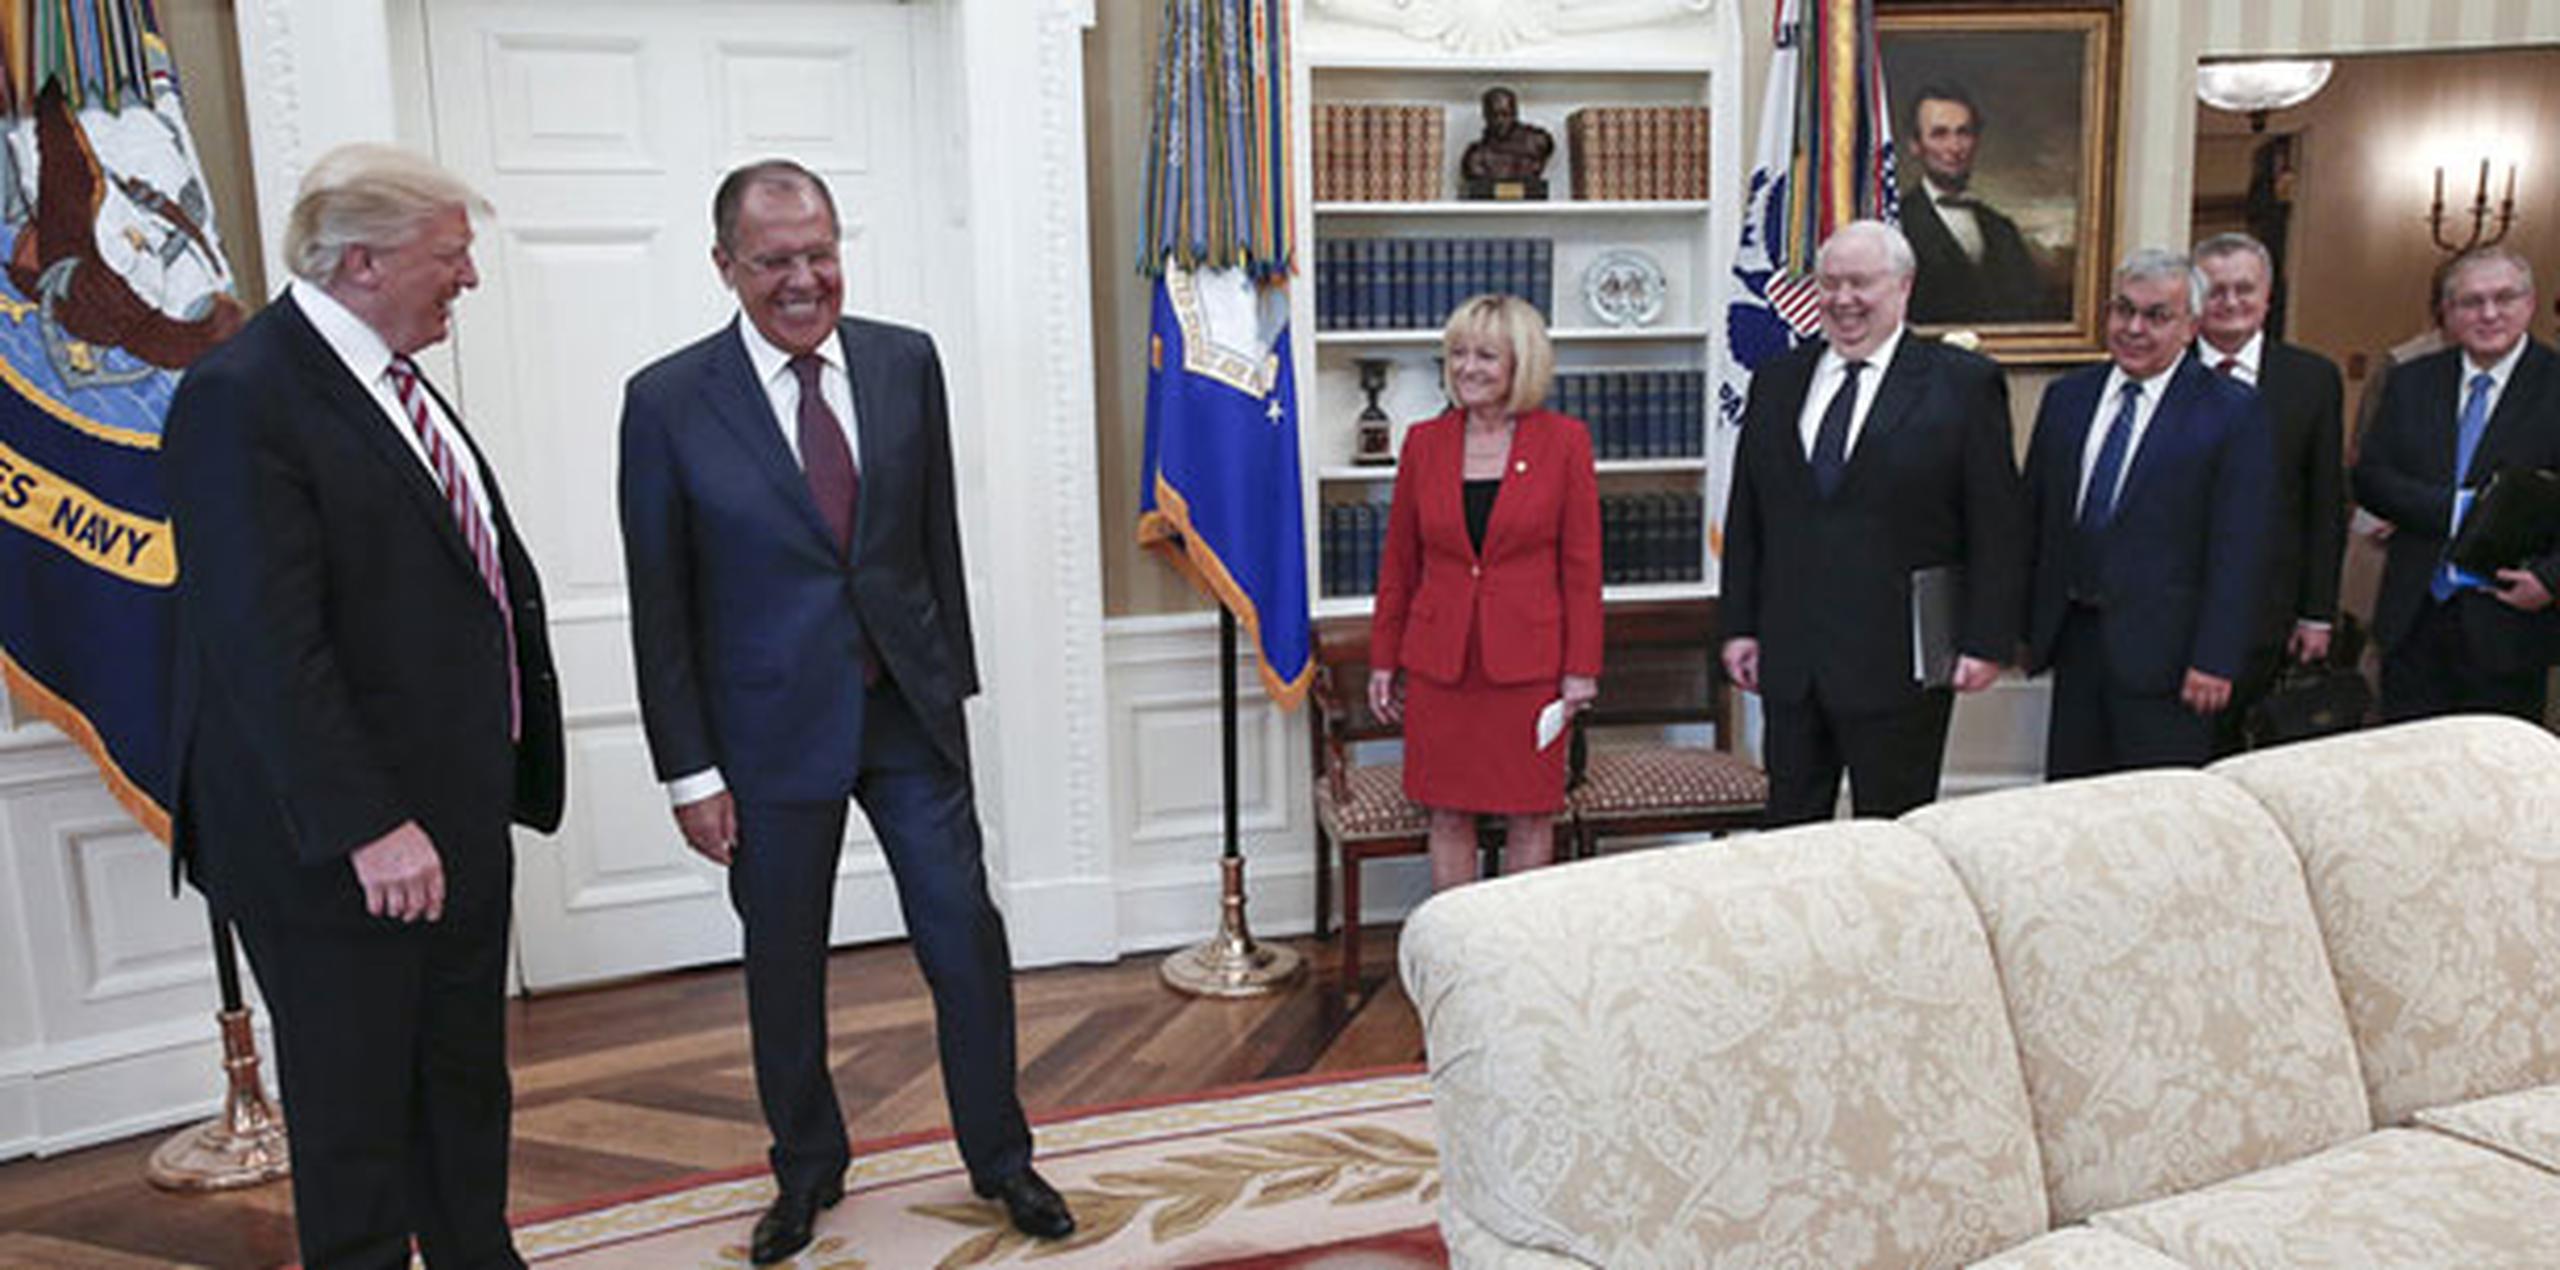 El fotógrafo, quien estuvo cerca de Trump cuando éste conversaba con el ministro de Relaciones Exteriores de Rusia Sergei Lavrov y con el embajador ruso ante Estados Unidos, Sergey Kislyak, había dicho que era el fotógrafo oficial de Lavrov.  (AP)